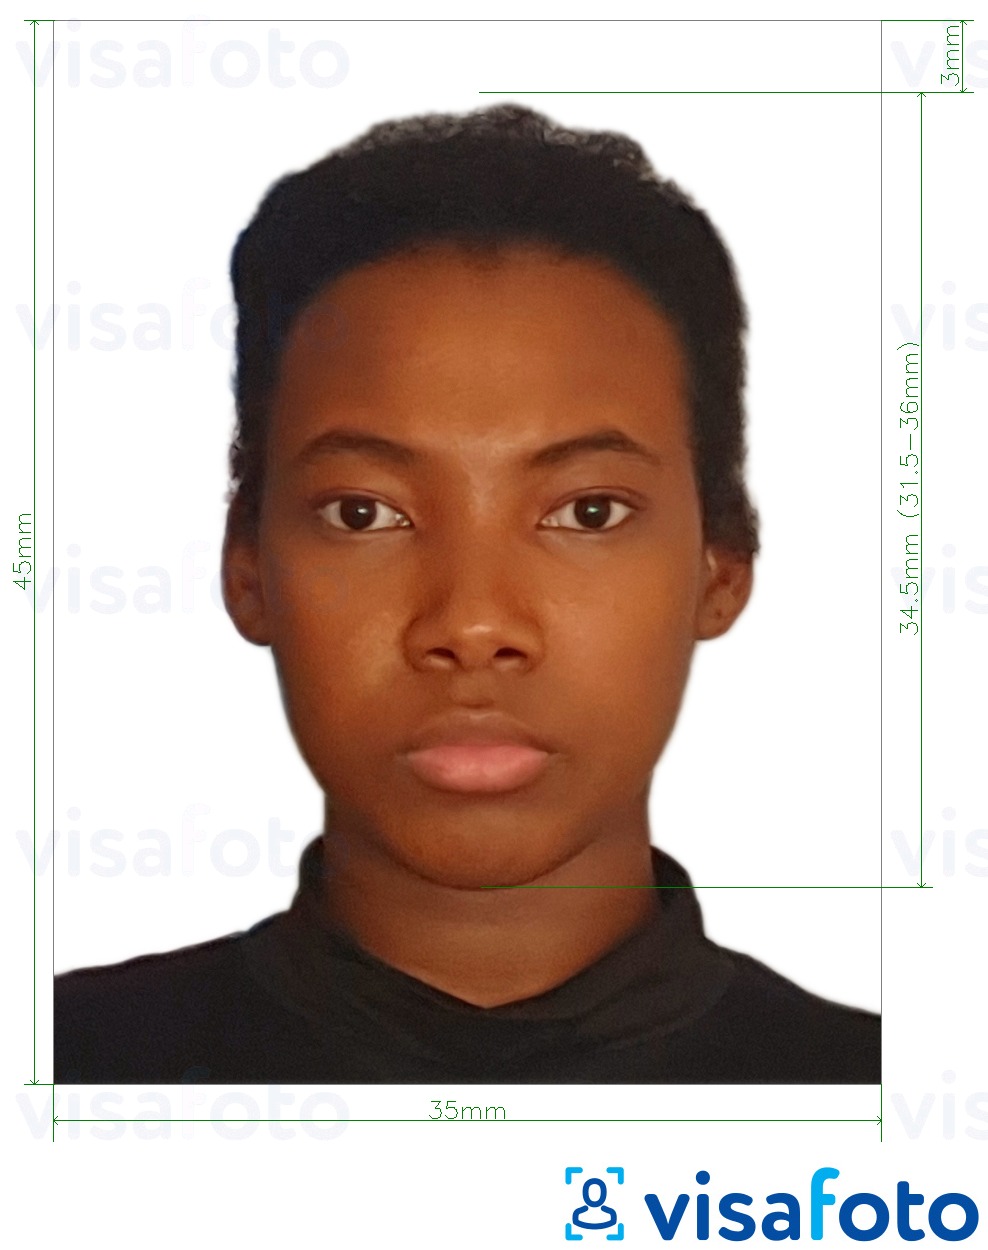 Exemplo de foto para Passaporte do Malawi 4.5x3.5 cm (45x35 mm) com especificação exata de dimensão